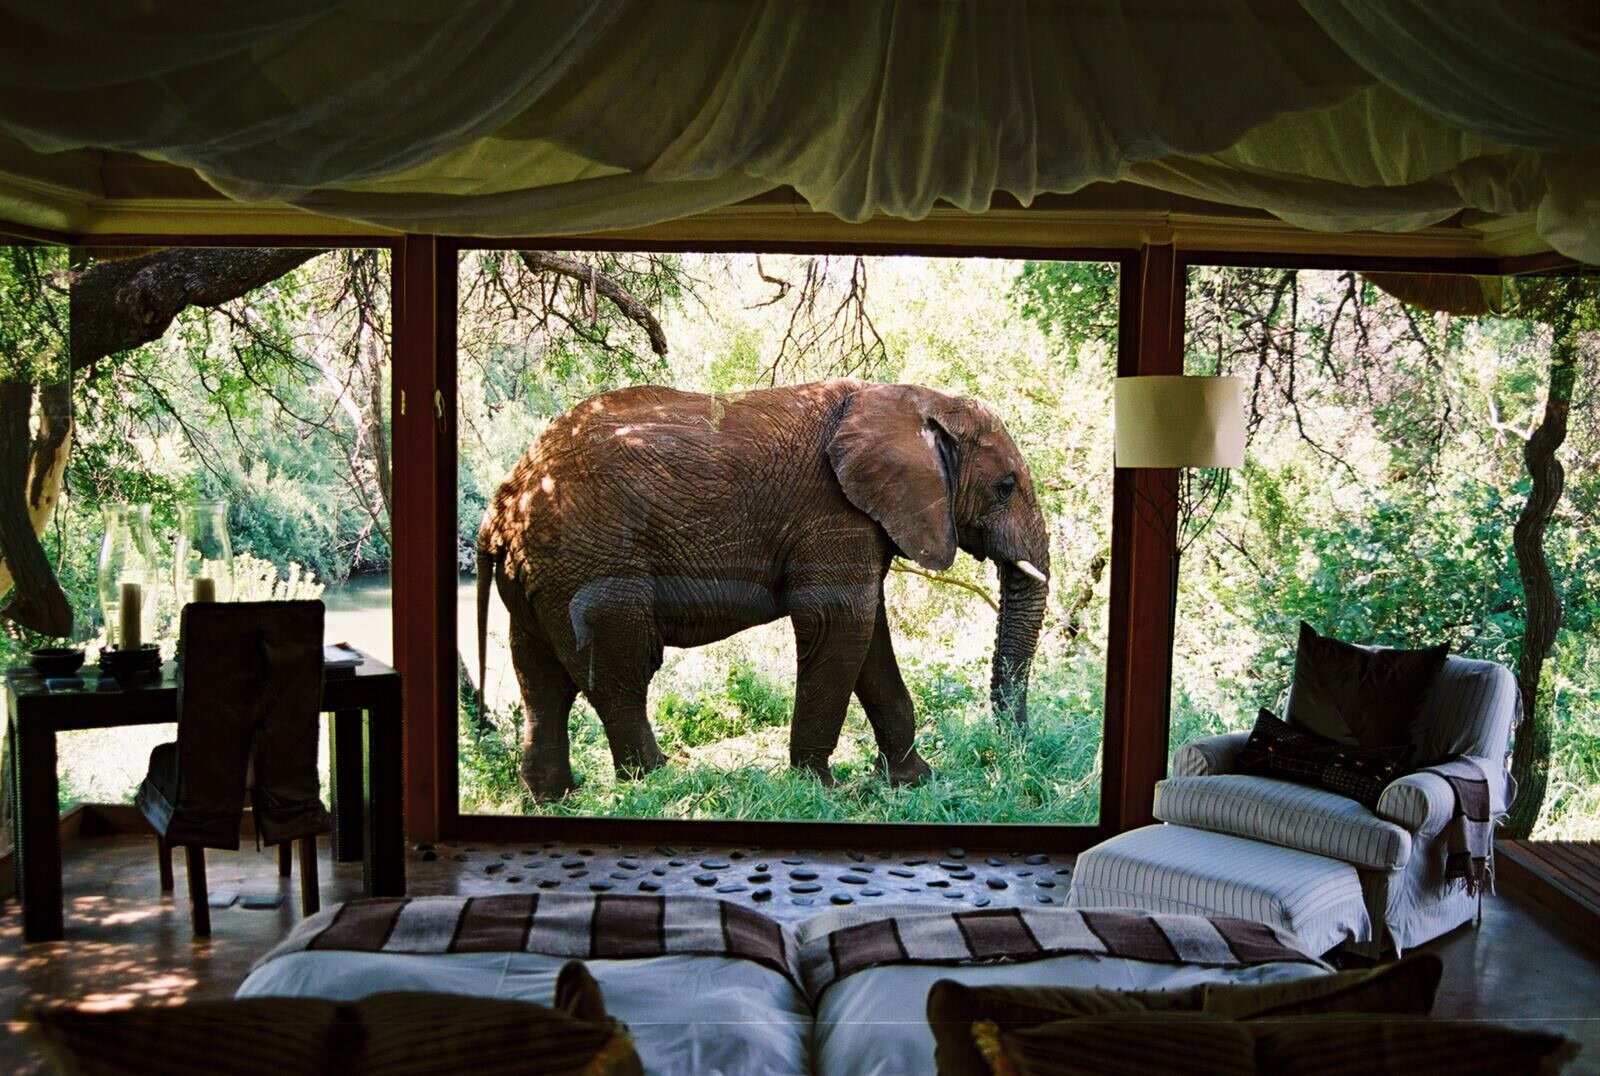 Elephants on honeymoon